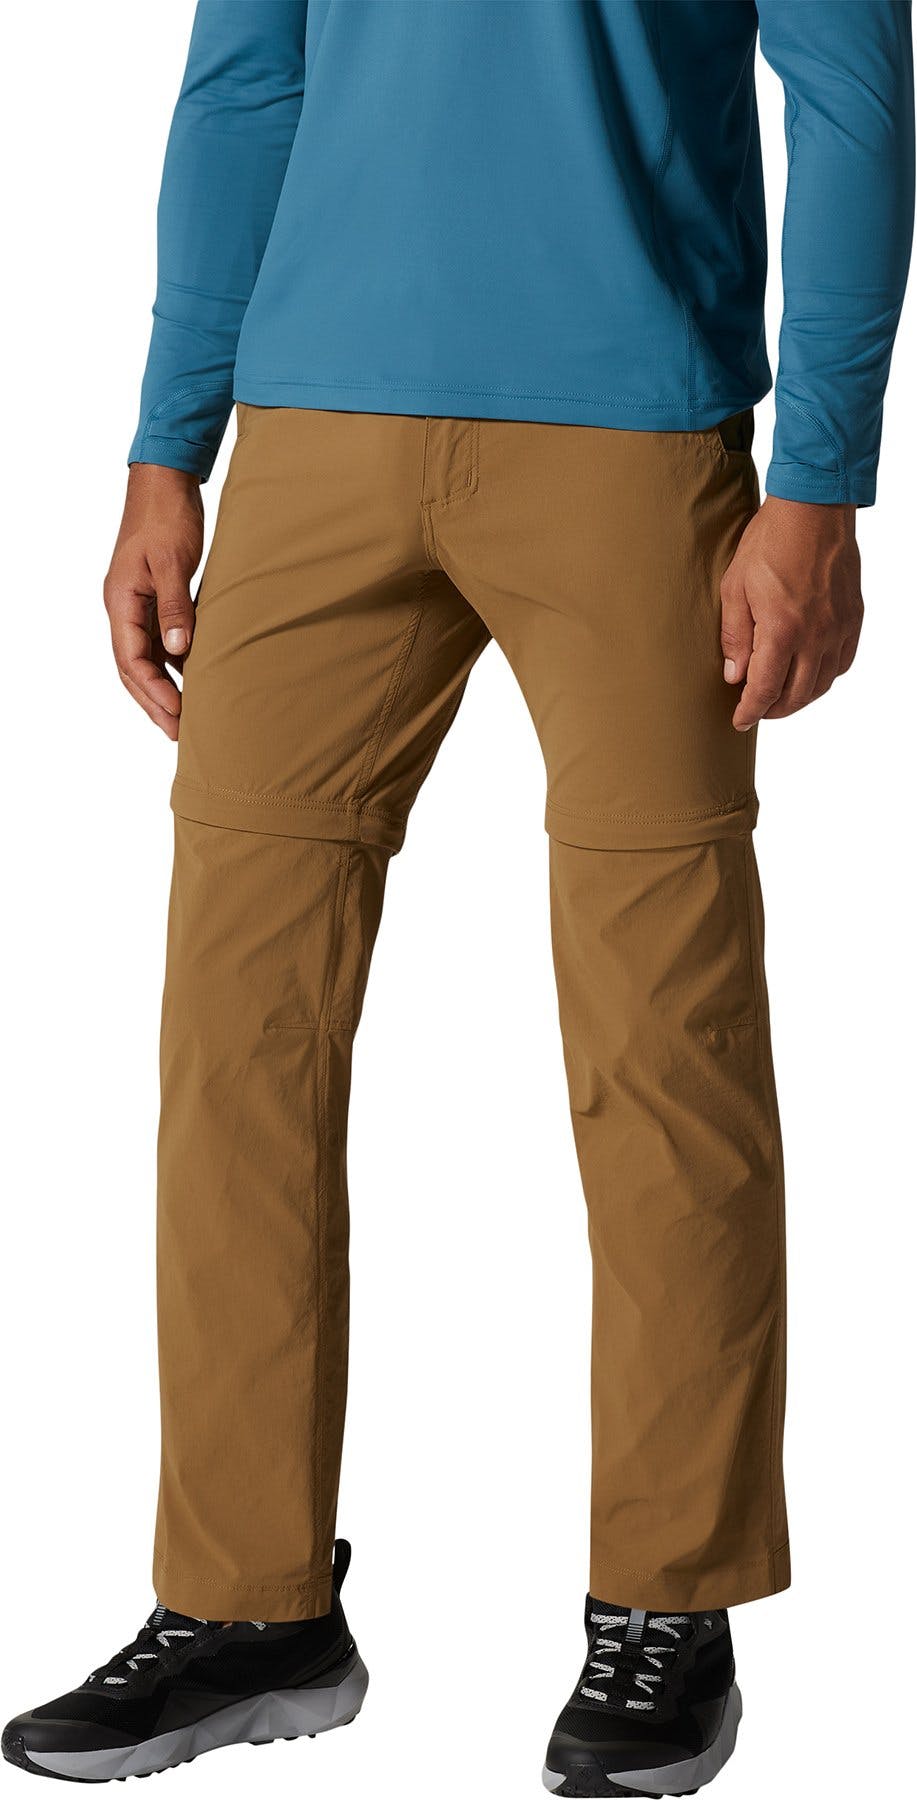 Product image for Basin Trek Convertible Pant - Men's